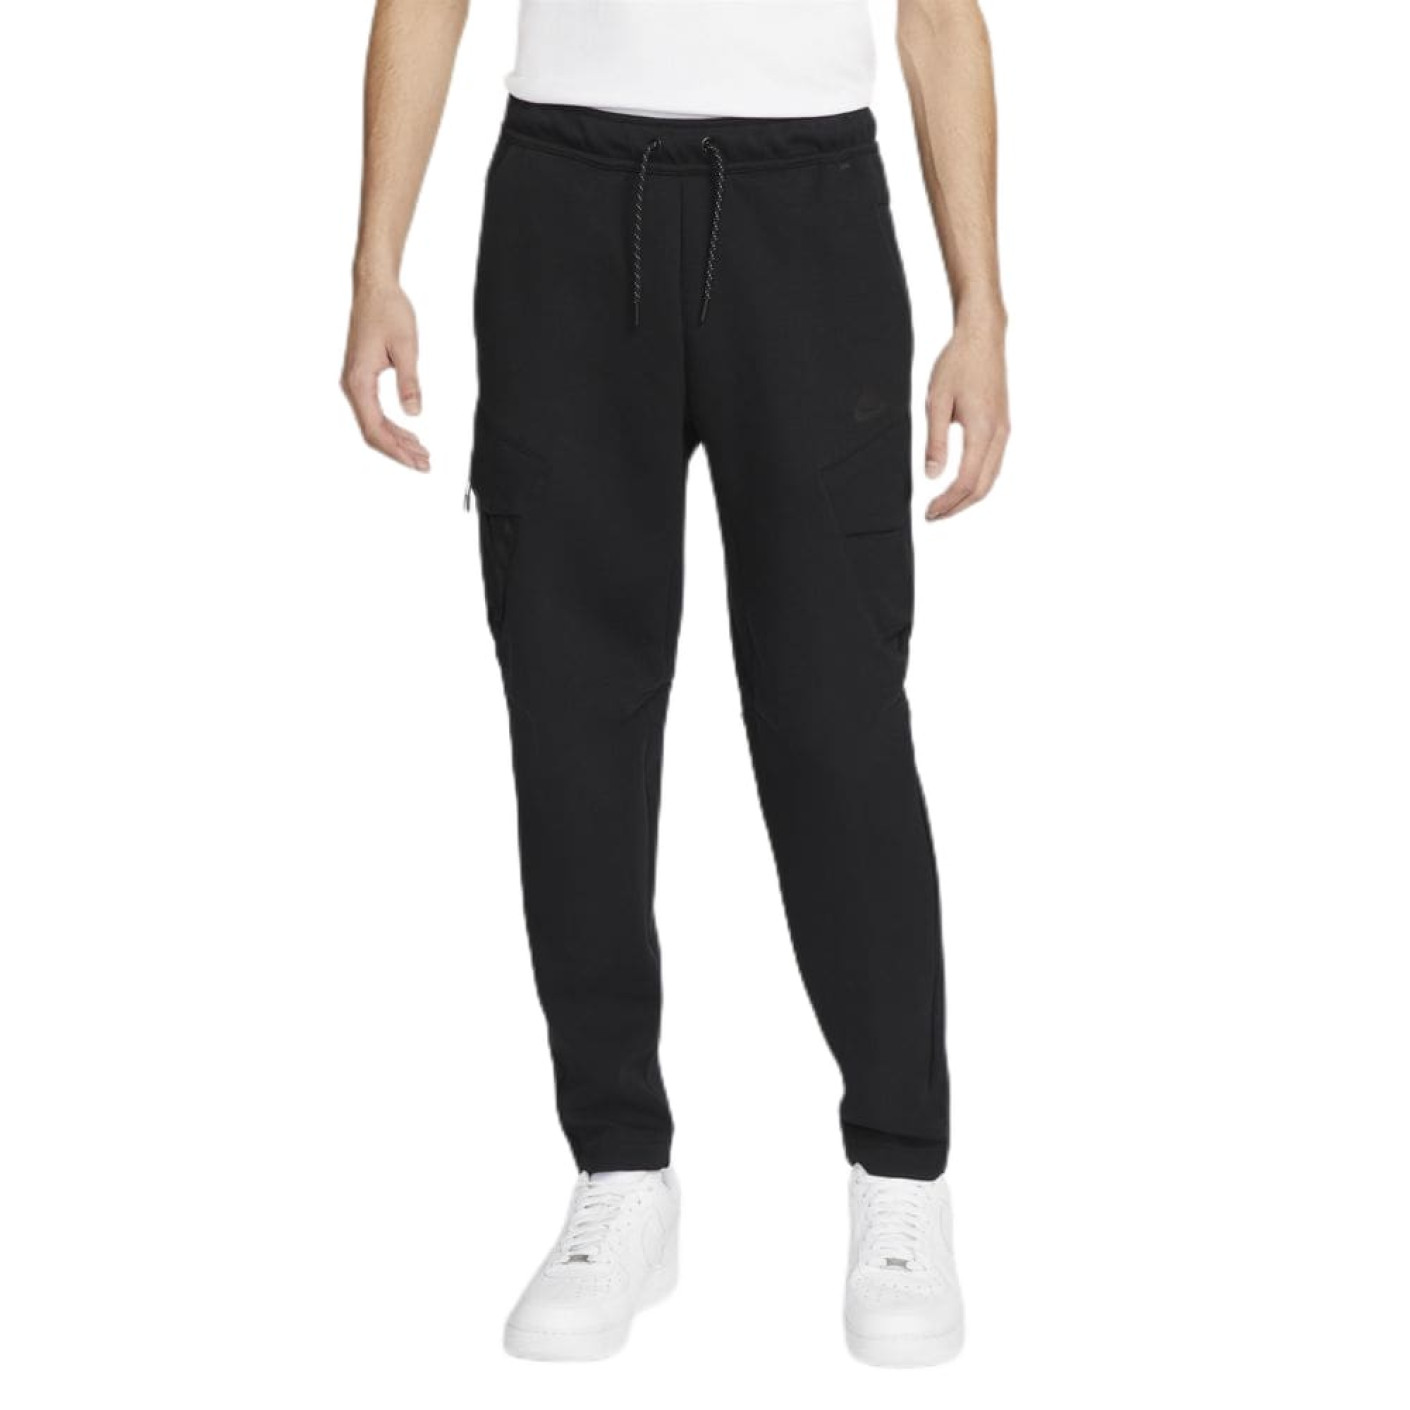 Nike Tech Fleece Cargo Pantalon Noir